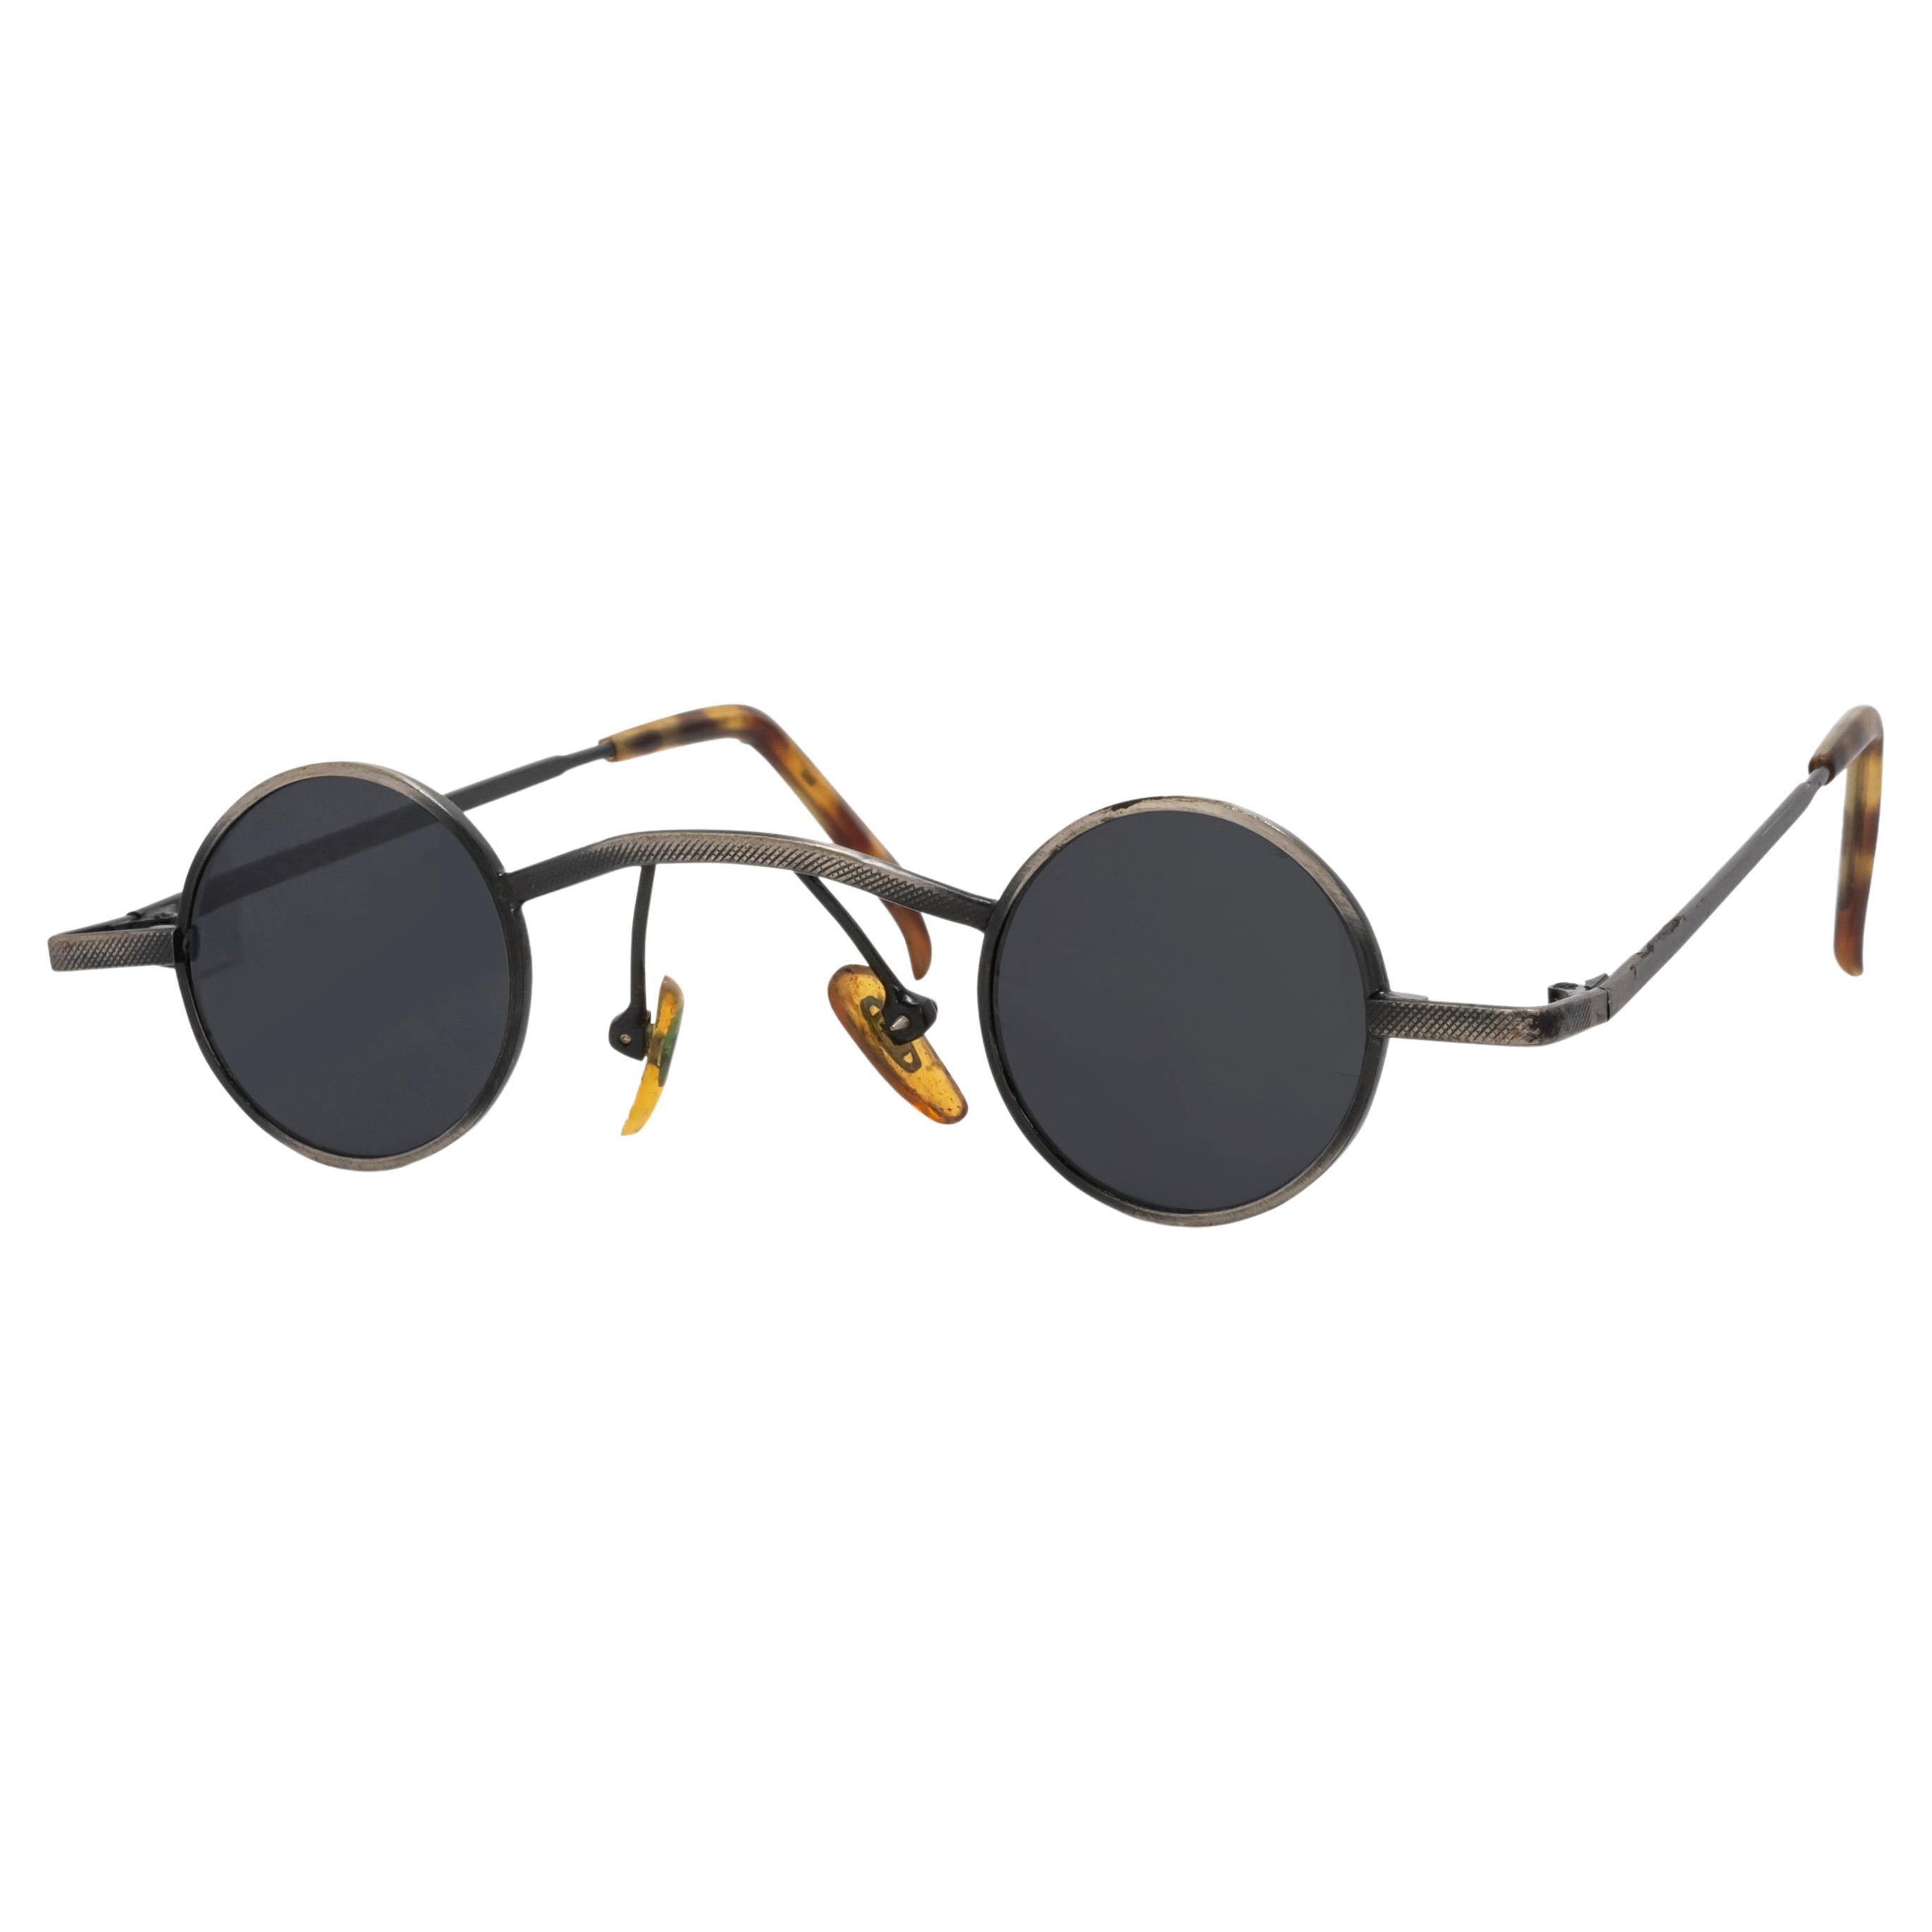 Aus der Le Tour De Bochic Vintage Kollektion - Antike / Vintage Neo Sonnenbrille
Herkunft China 
50 -150 Jahre 
Sehr guter Zustand 
Diese Sonnenbrille ist ein modisches Accessoire, die Gläser können ersetzt werden.
Kommt mit einer Sonnenbrillenbox